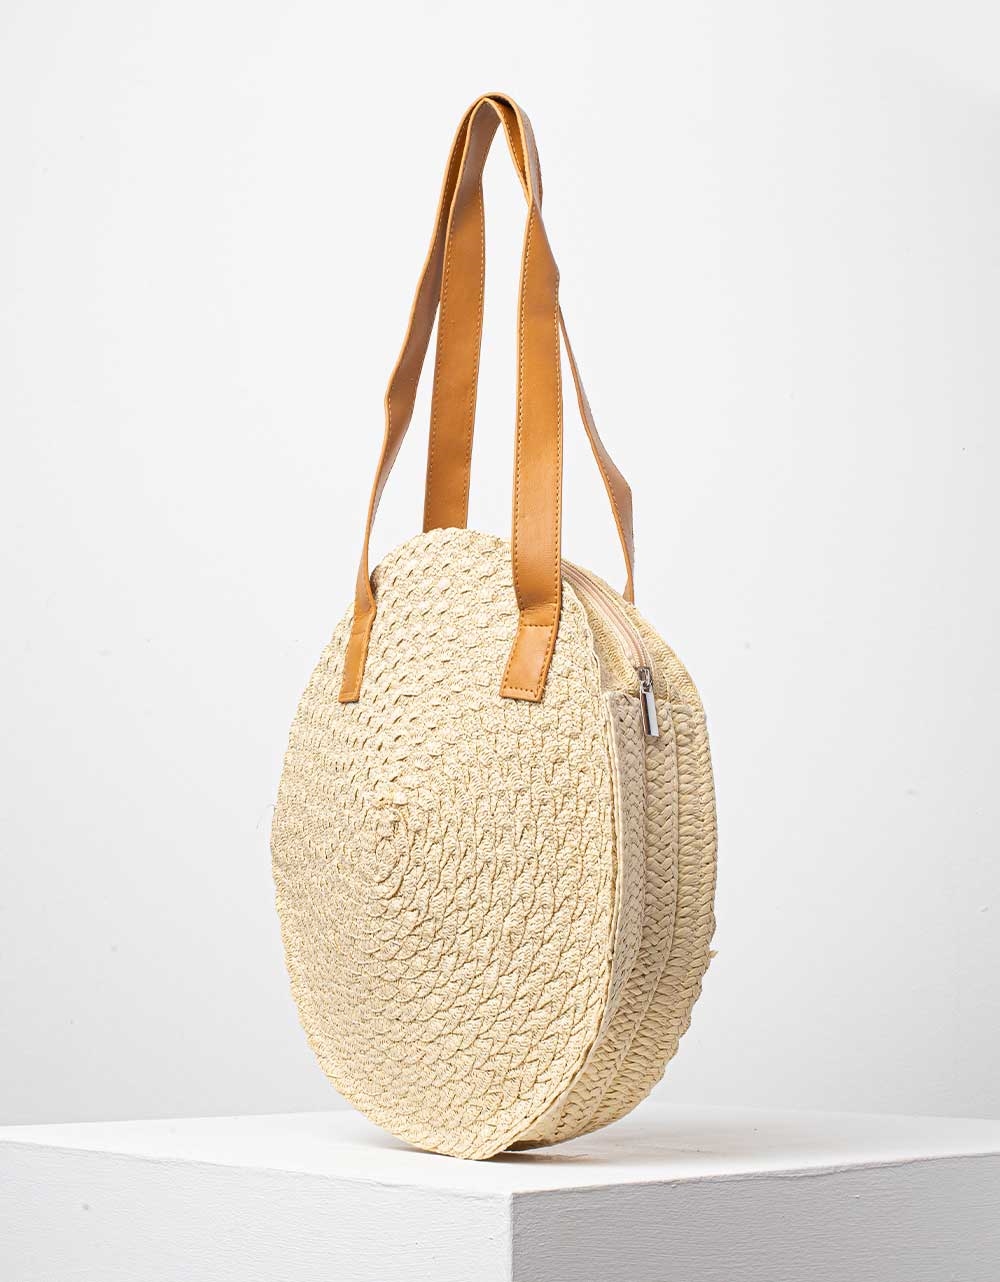 Εικόνα από Γυναικεία τσάντα χειρός ψάθινη σε στρογγυλό σχήμα με διακοσμητικά φουντάκια Μπεζ